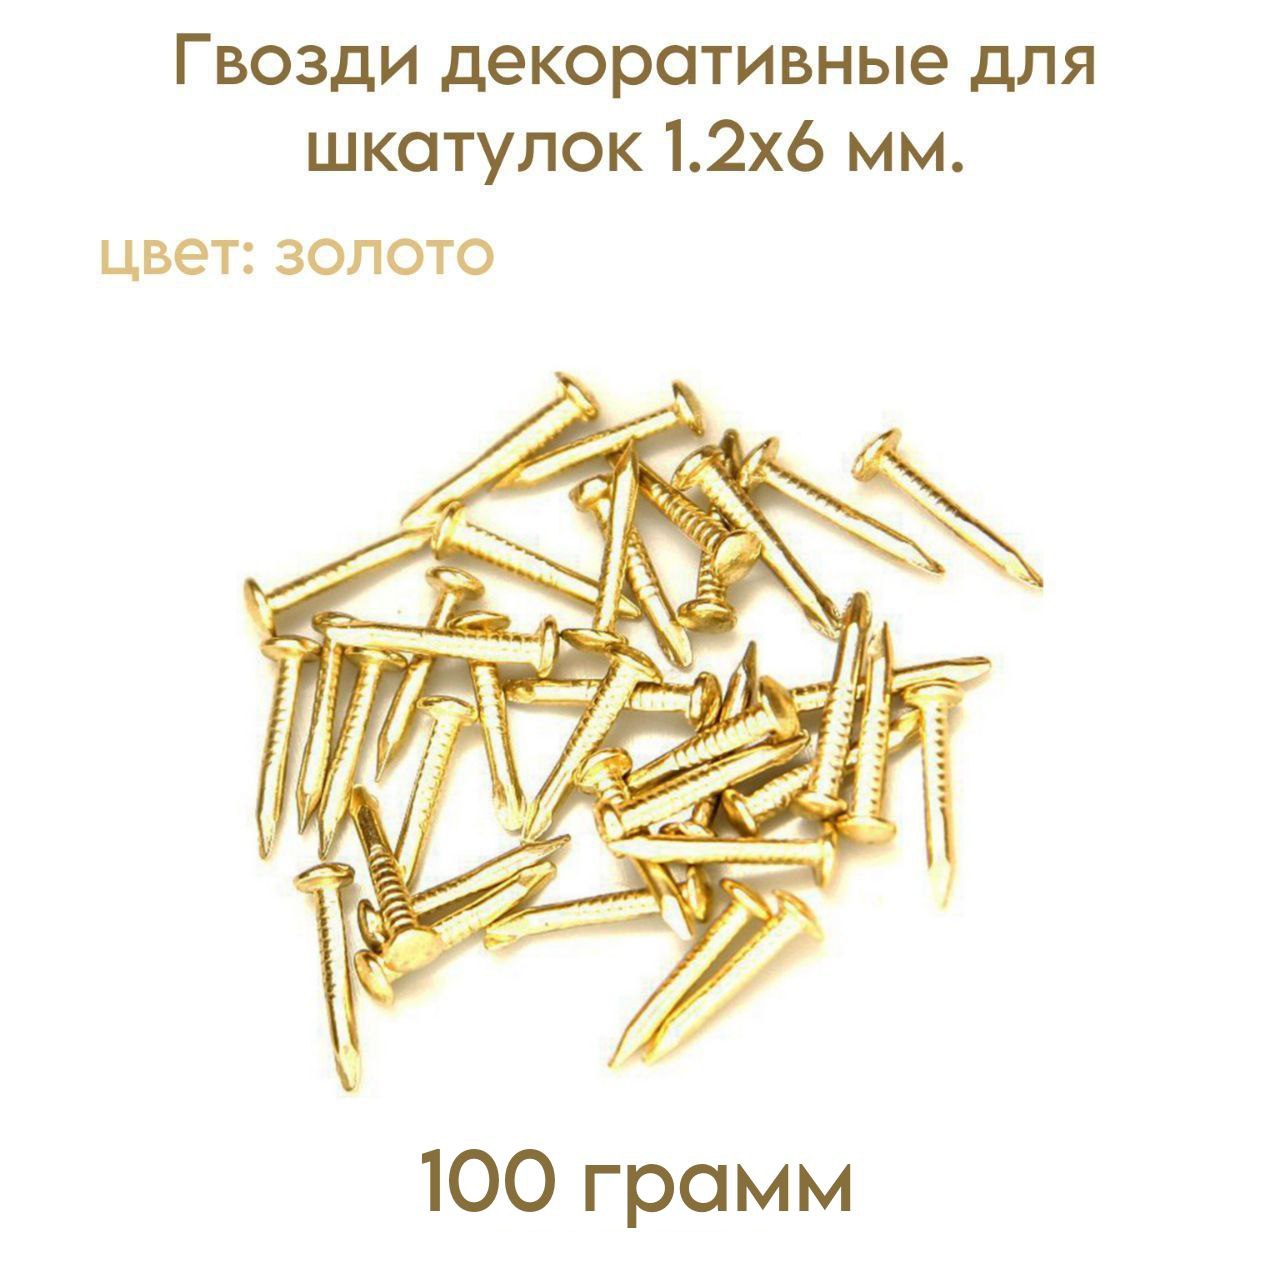 Гвозди LIVGARD декоративные для шкатулок, золото, 12х6 мм 100 грамм